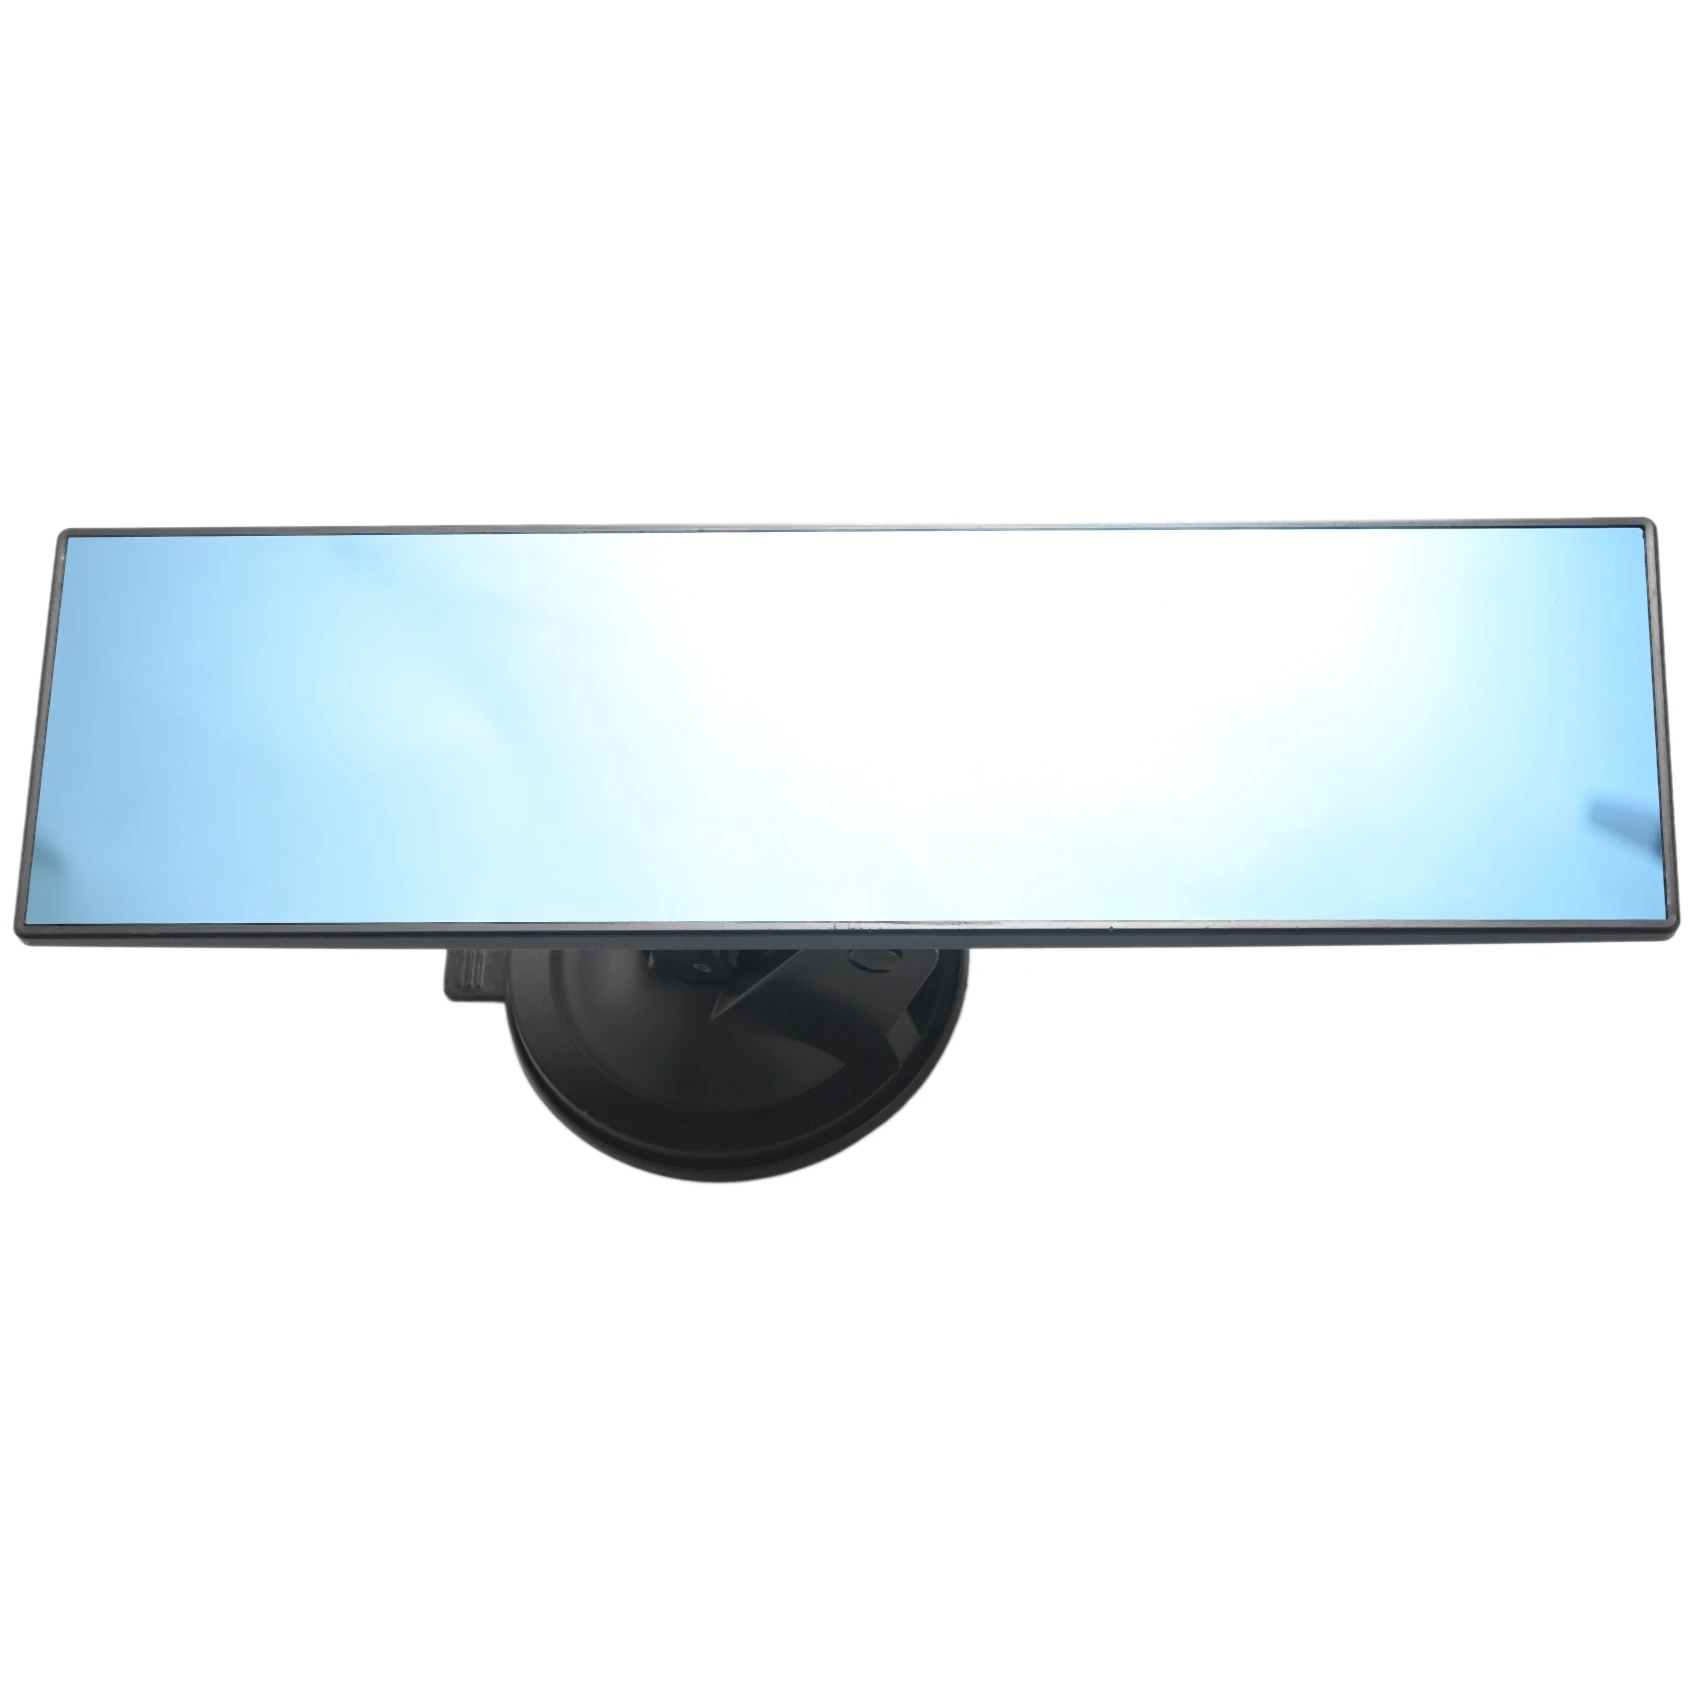 

Автомобильное зеркало заднего вида, универсальное антибликовое зеркало заднего вида для салона автомобиля грузовика с присоской, синее зеркало для уменьшения слепых зон